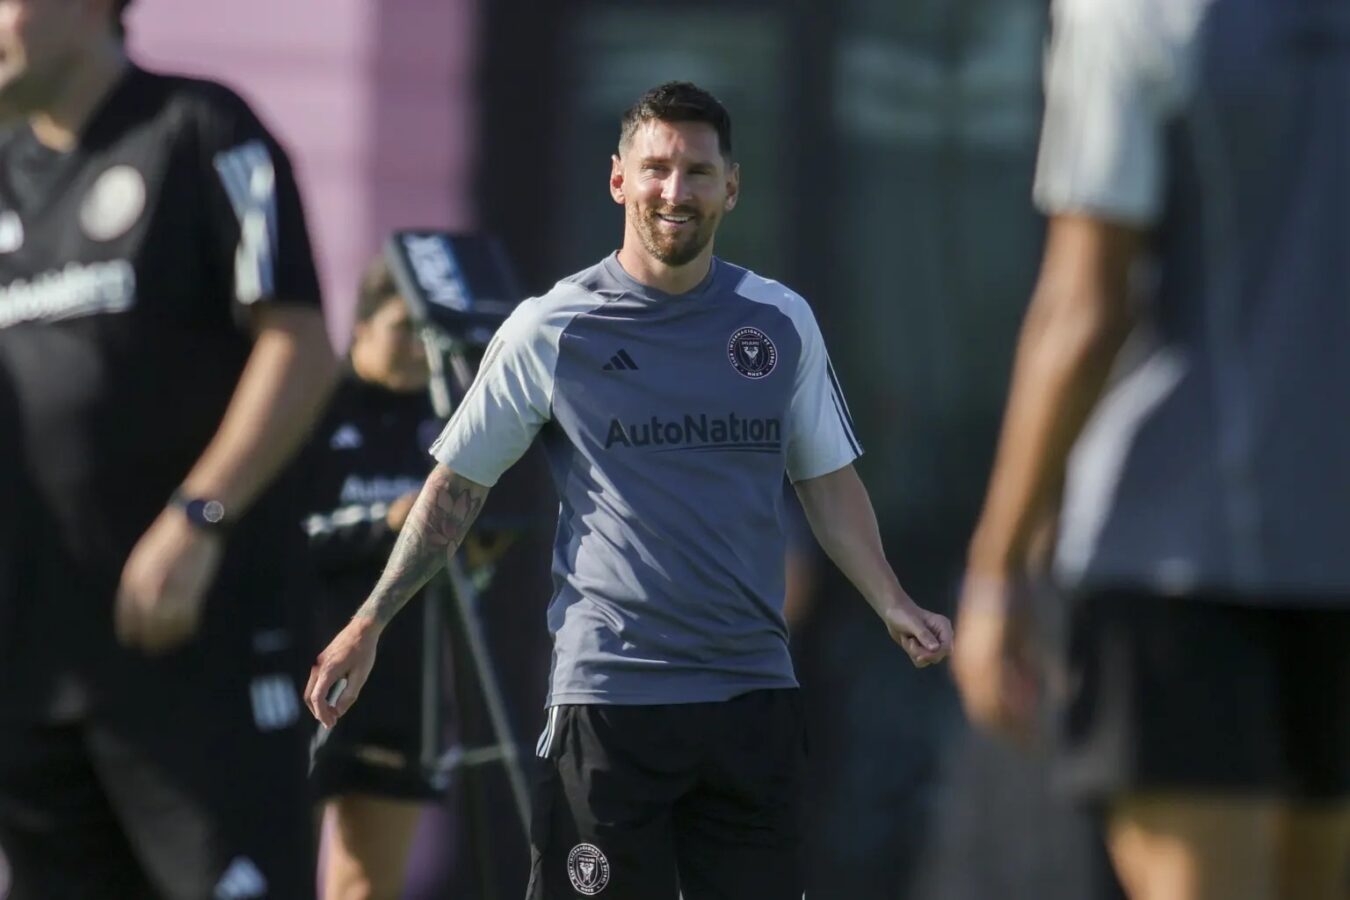 Confirma Tata Martino debut de Messi: “podemos esperar verlo el viernes”